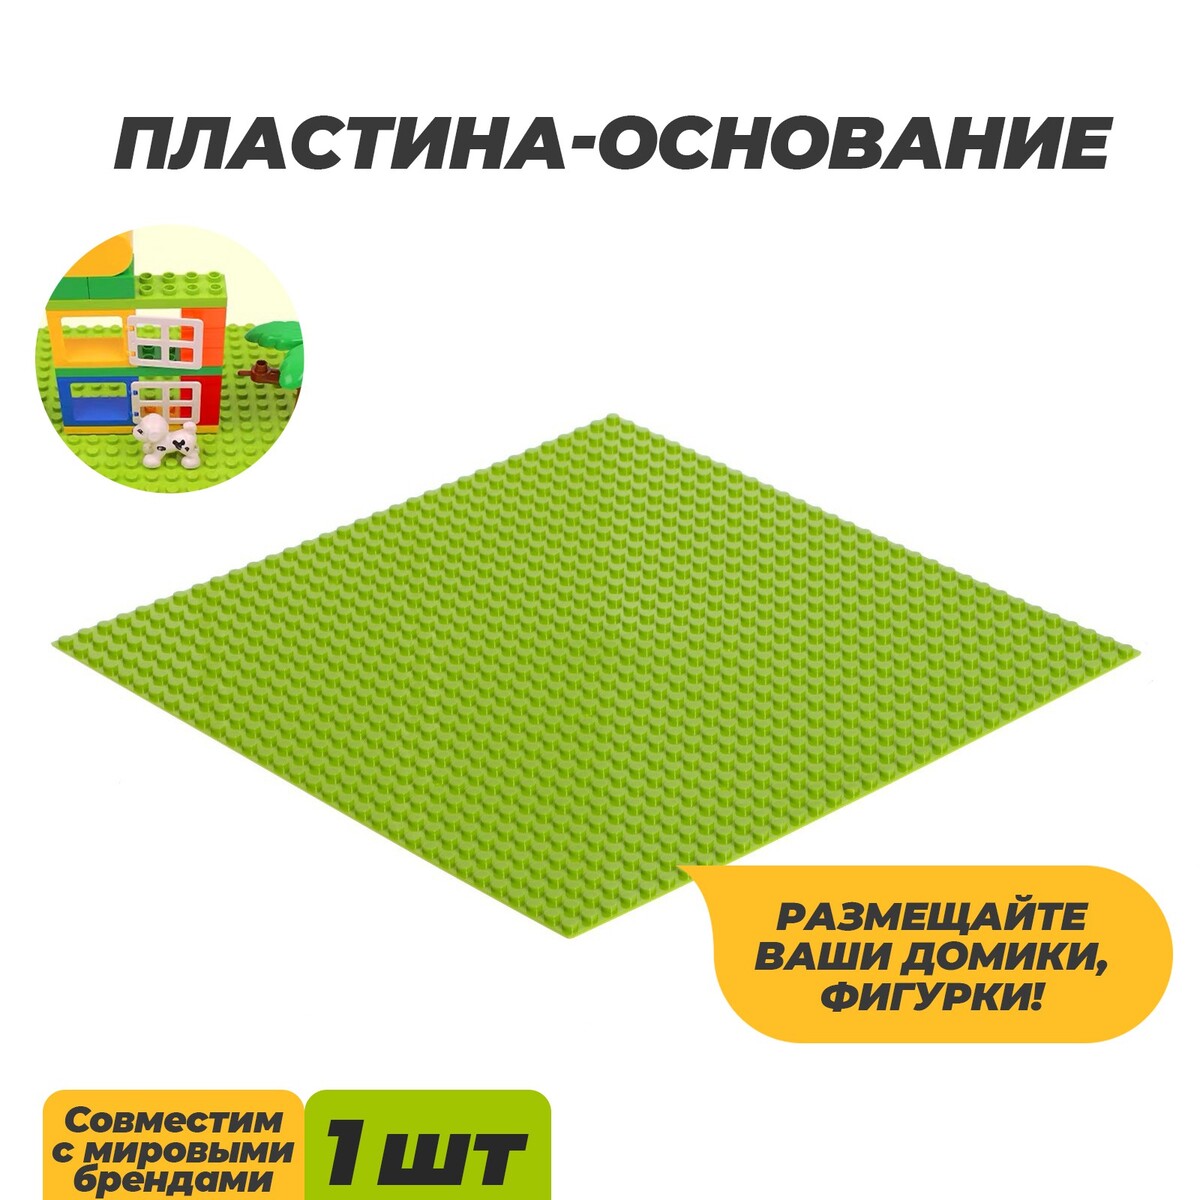 Пластина-основание для конструктора, 25,5 × 25,5 см, цвет салатовый пластина перекрытие для конструктора 16 х 24 см зеленый